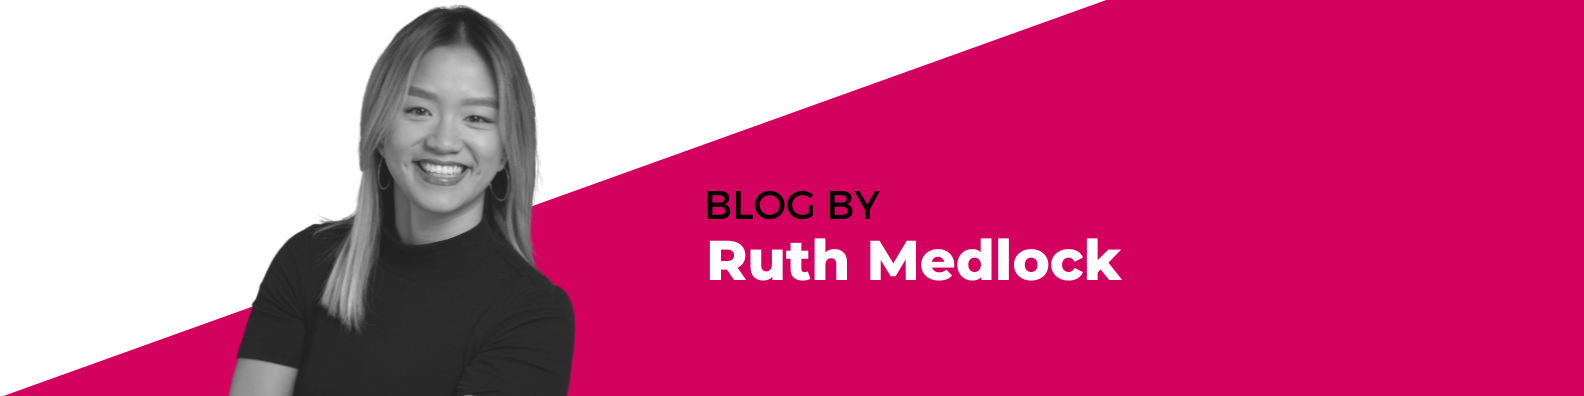 Ruth Medlock